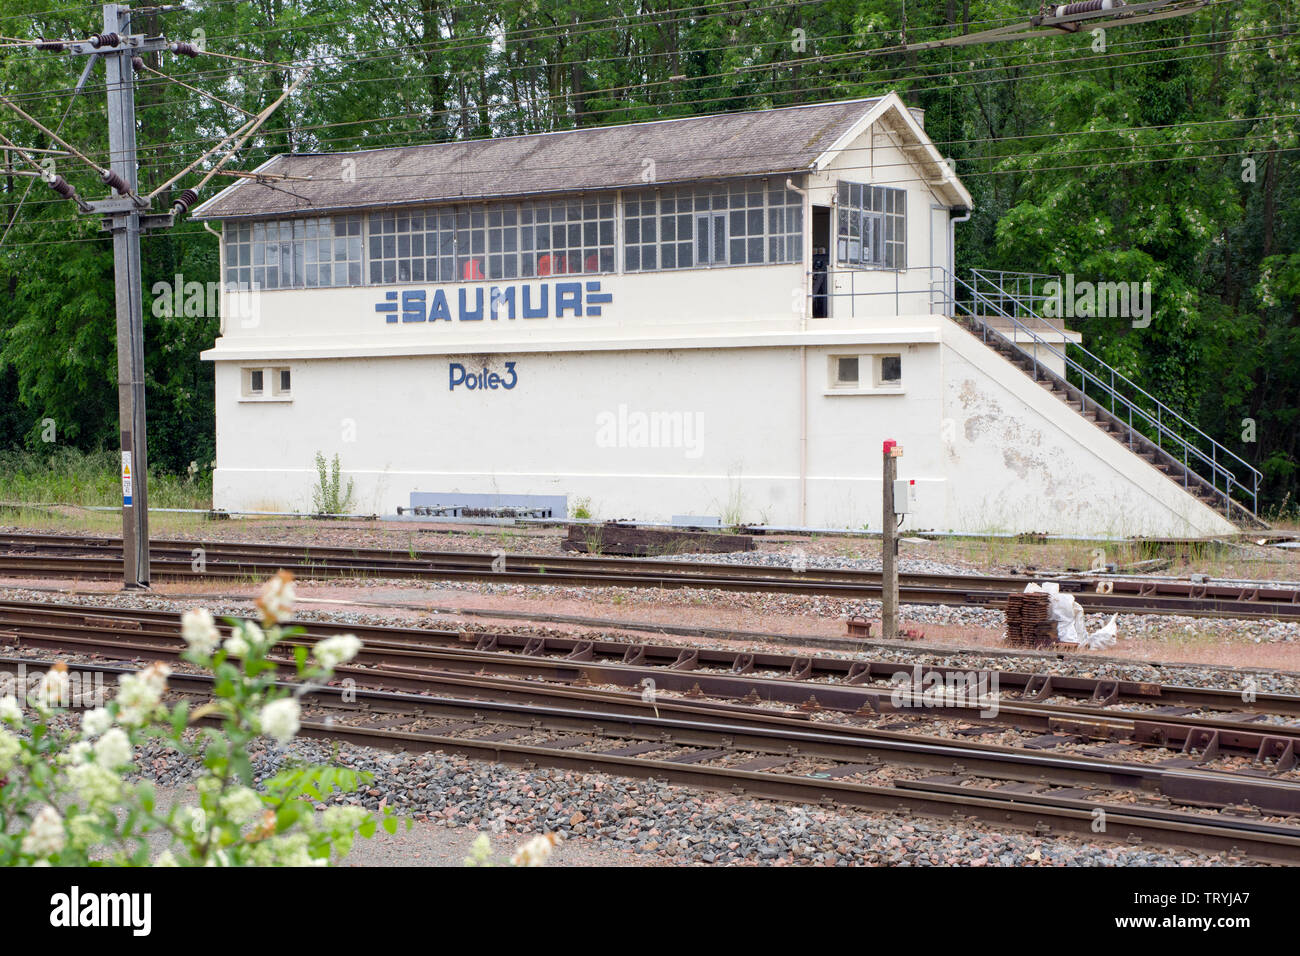 Signal ferroviaire fort Saumur Poste 3 SNCF Banque D'Images